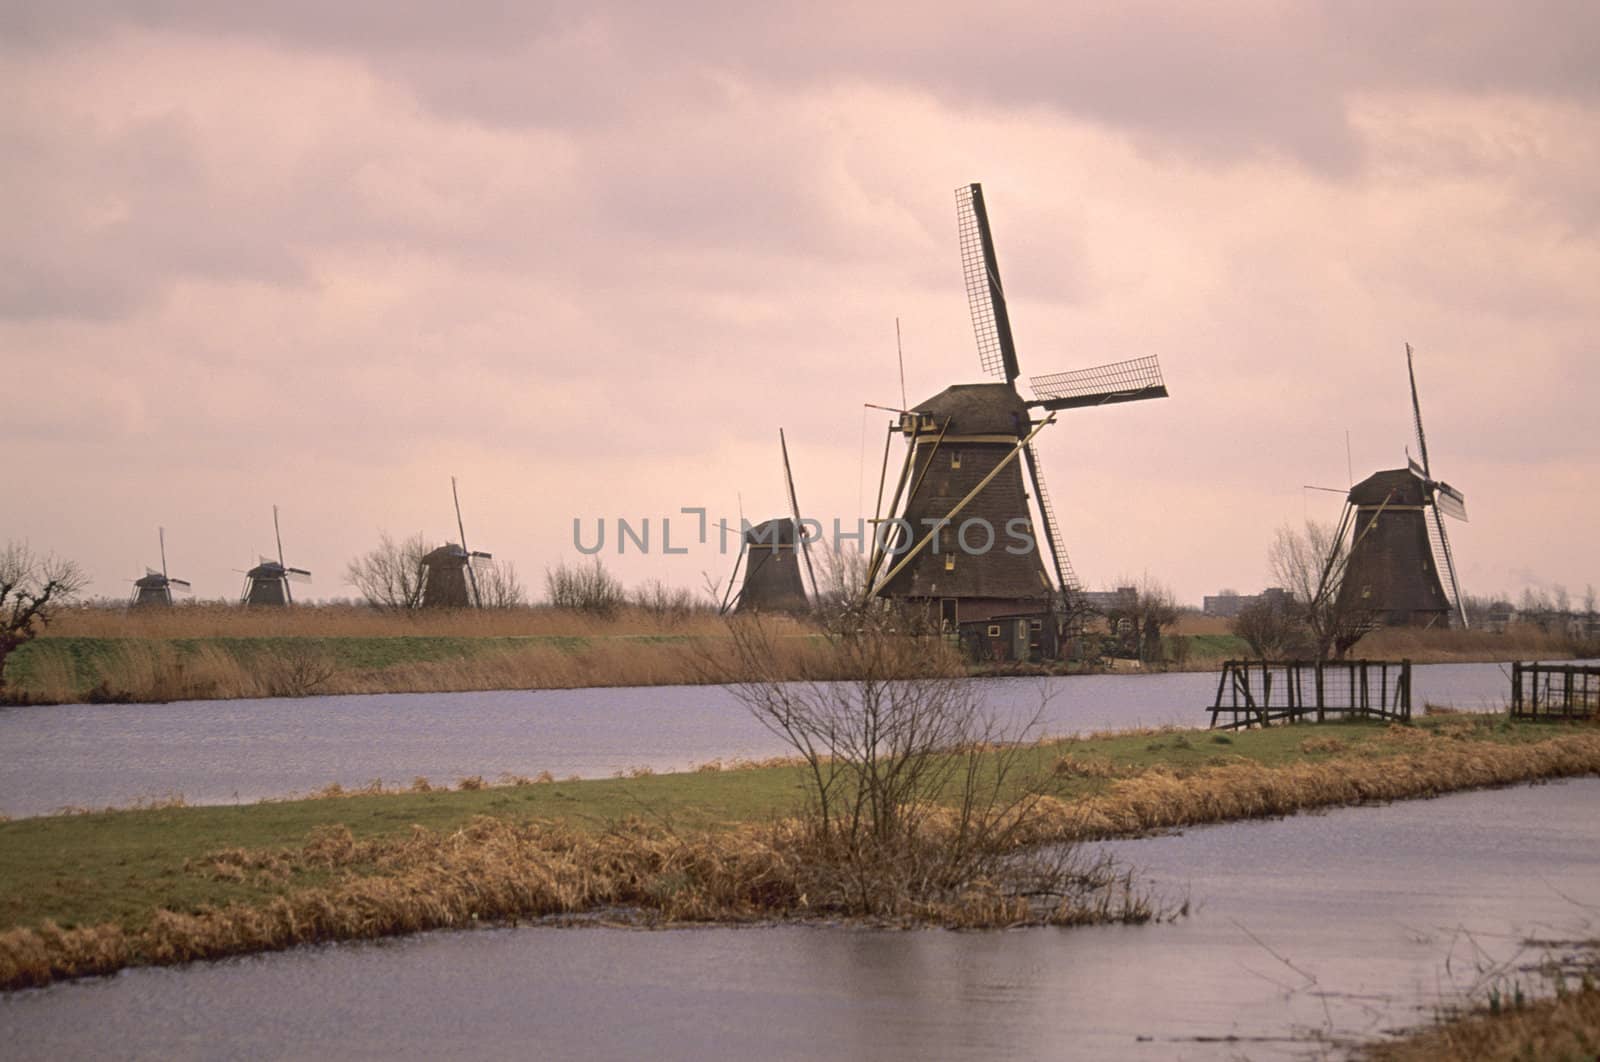 UNESCO Heritage site - Kinderdijk by ACMPhoto